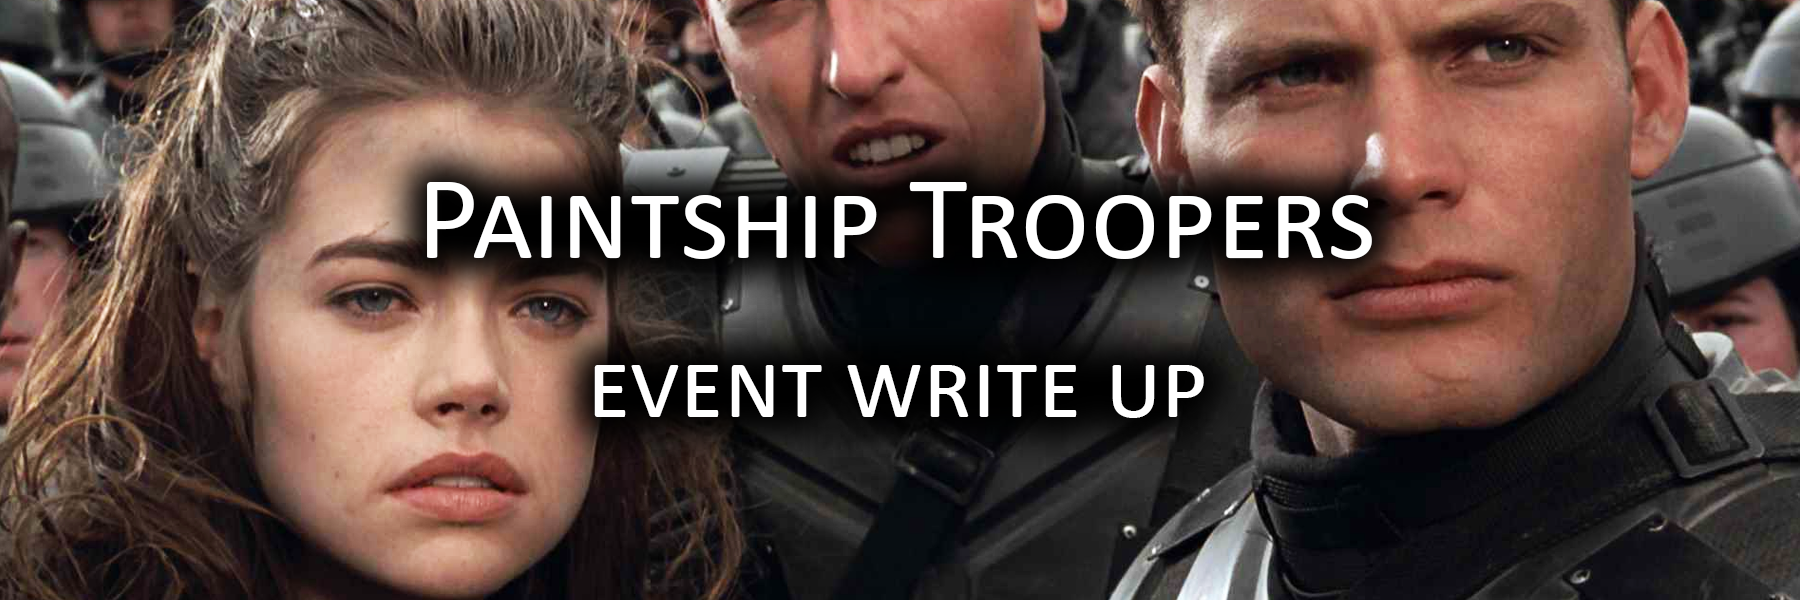 Paintship Troopers writeup